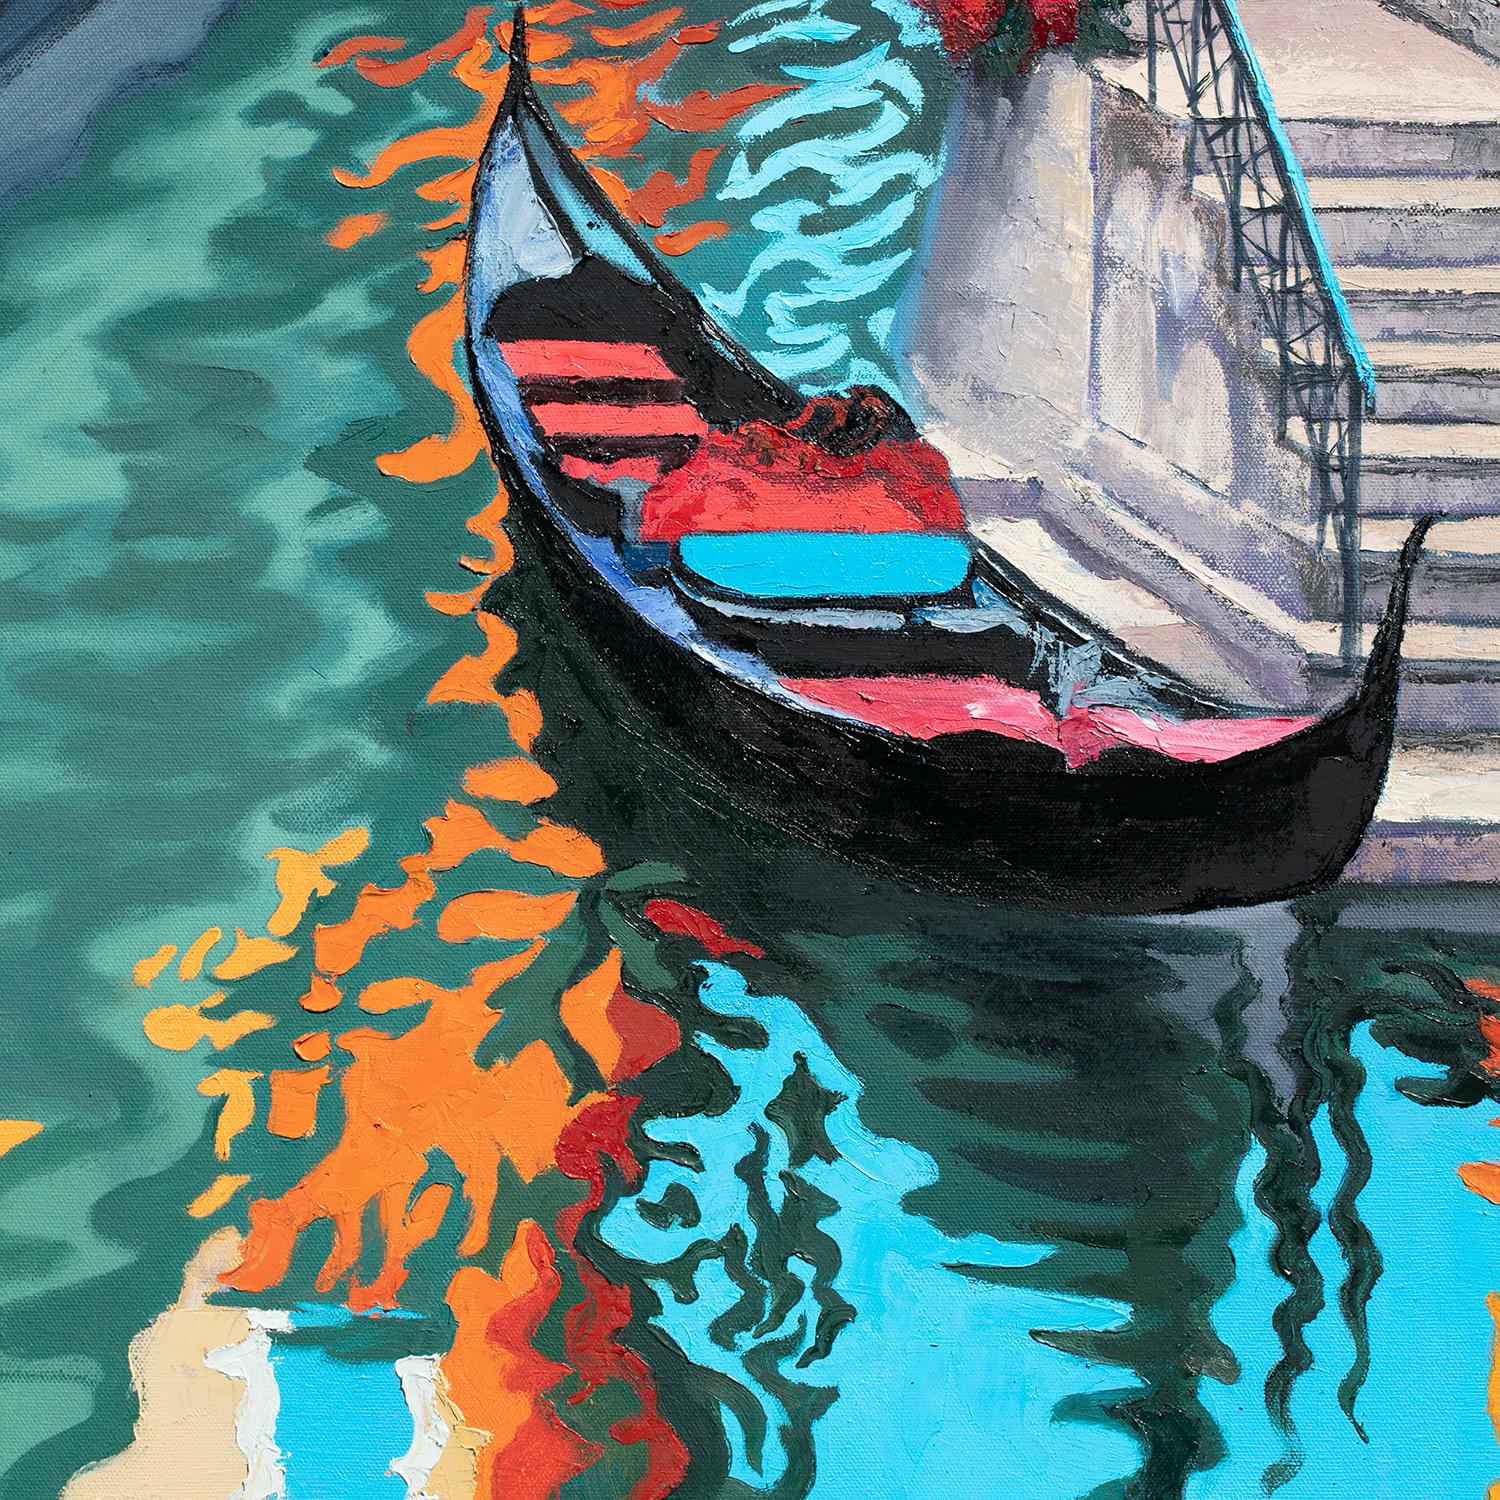 <p>Kommentare des Künstlers<br>Der Künstler Stanislav Sidorov zeigt eine farbenfrohe Darstellung des Kanals von Venedig aus seiner Stadtbildserie. Die Blumen und die Sonne mit ihren hellen Spiegelungen im Wasser fangen das fröhliche Gefühl der